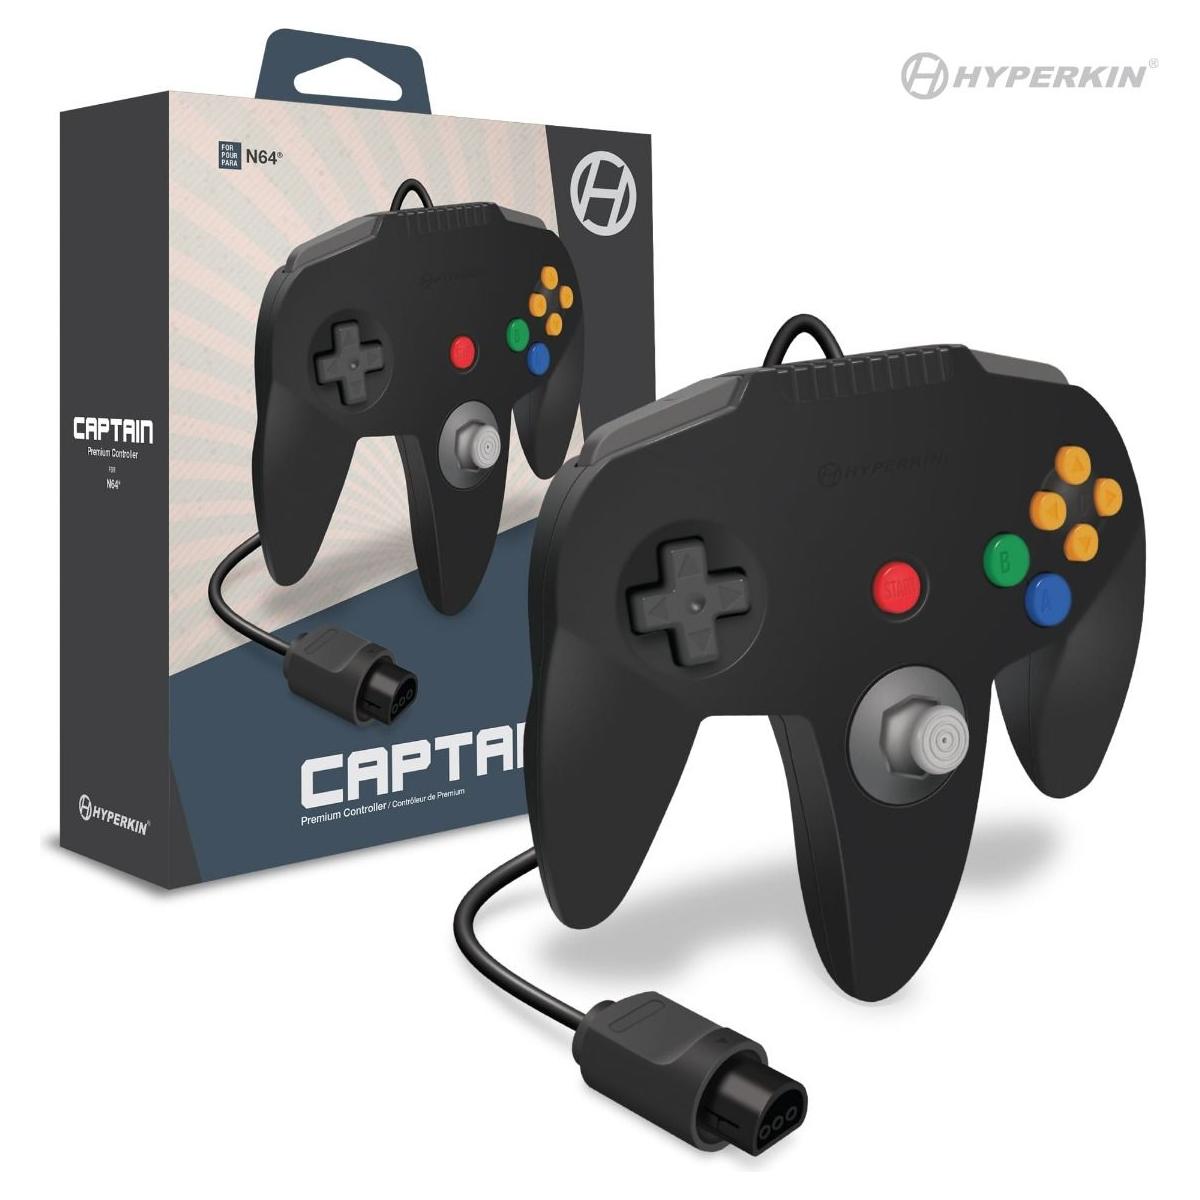 Nintendo 64 Captain Premium Controller (N64)